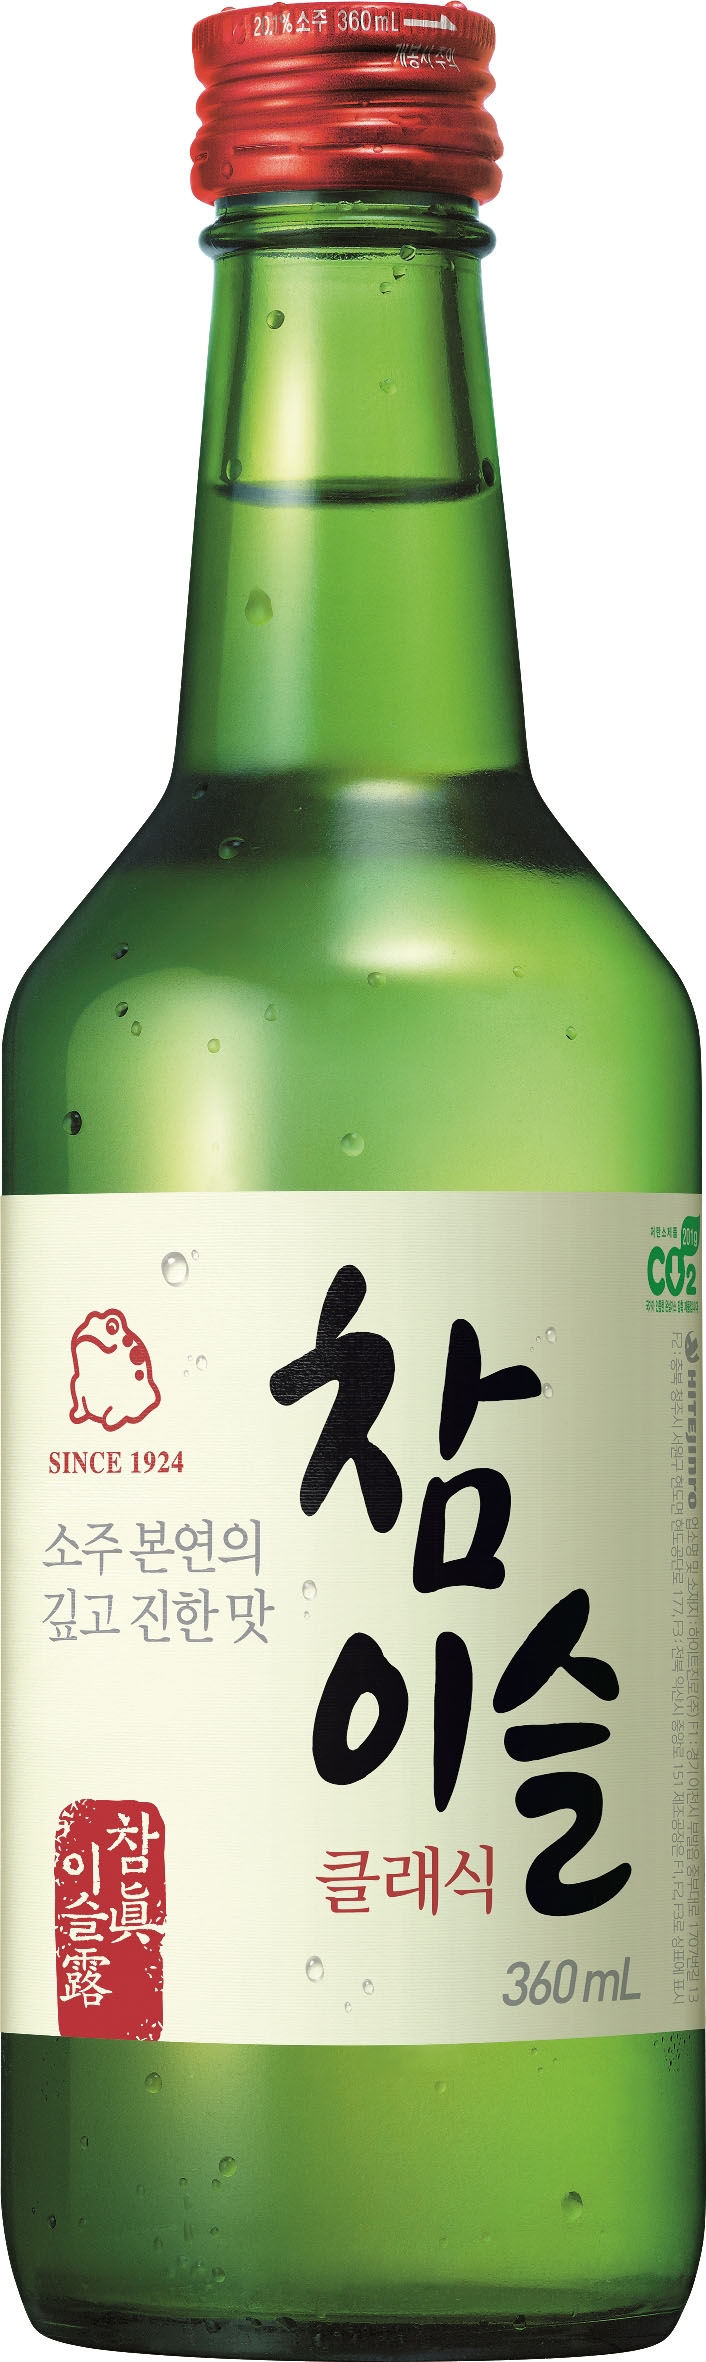 המשקה המסורתי הדרום קוריאני "סוג'ו", ובירה HITE. צילום: יח"צ